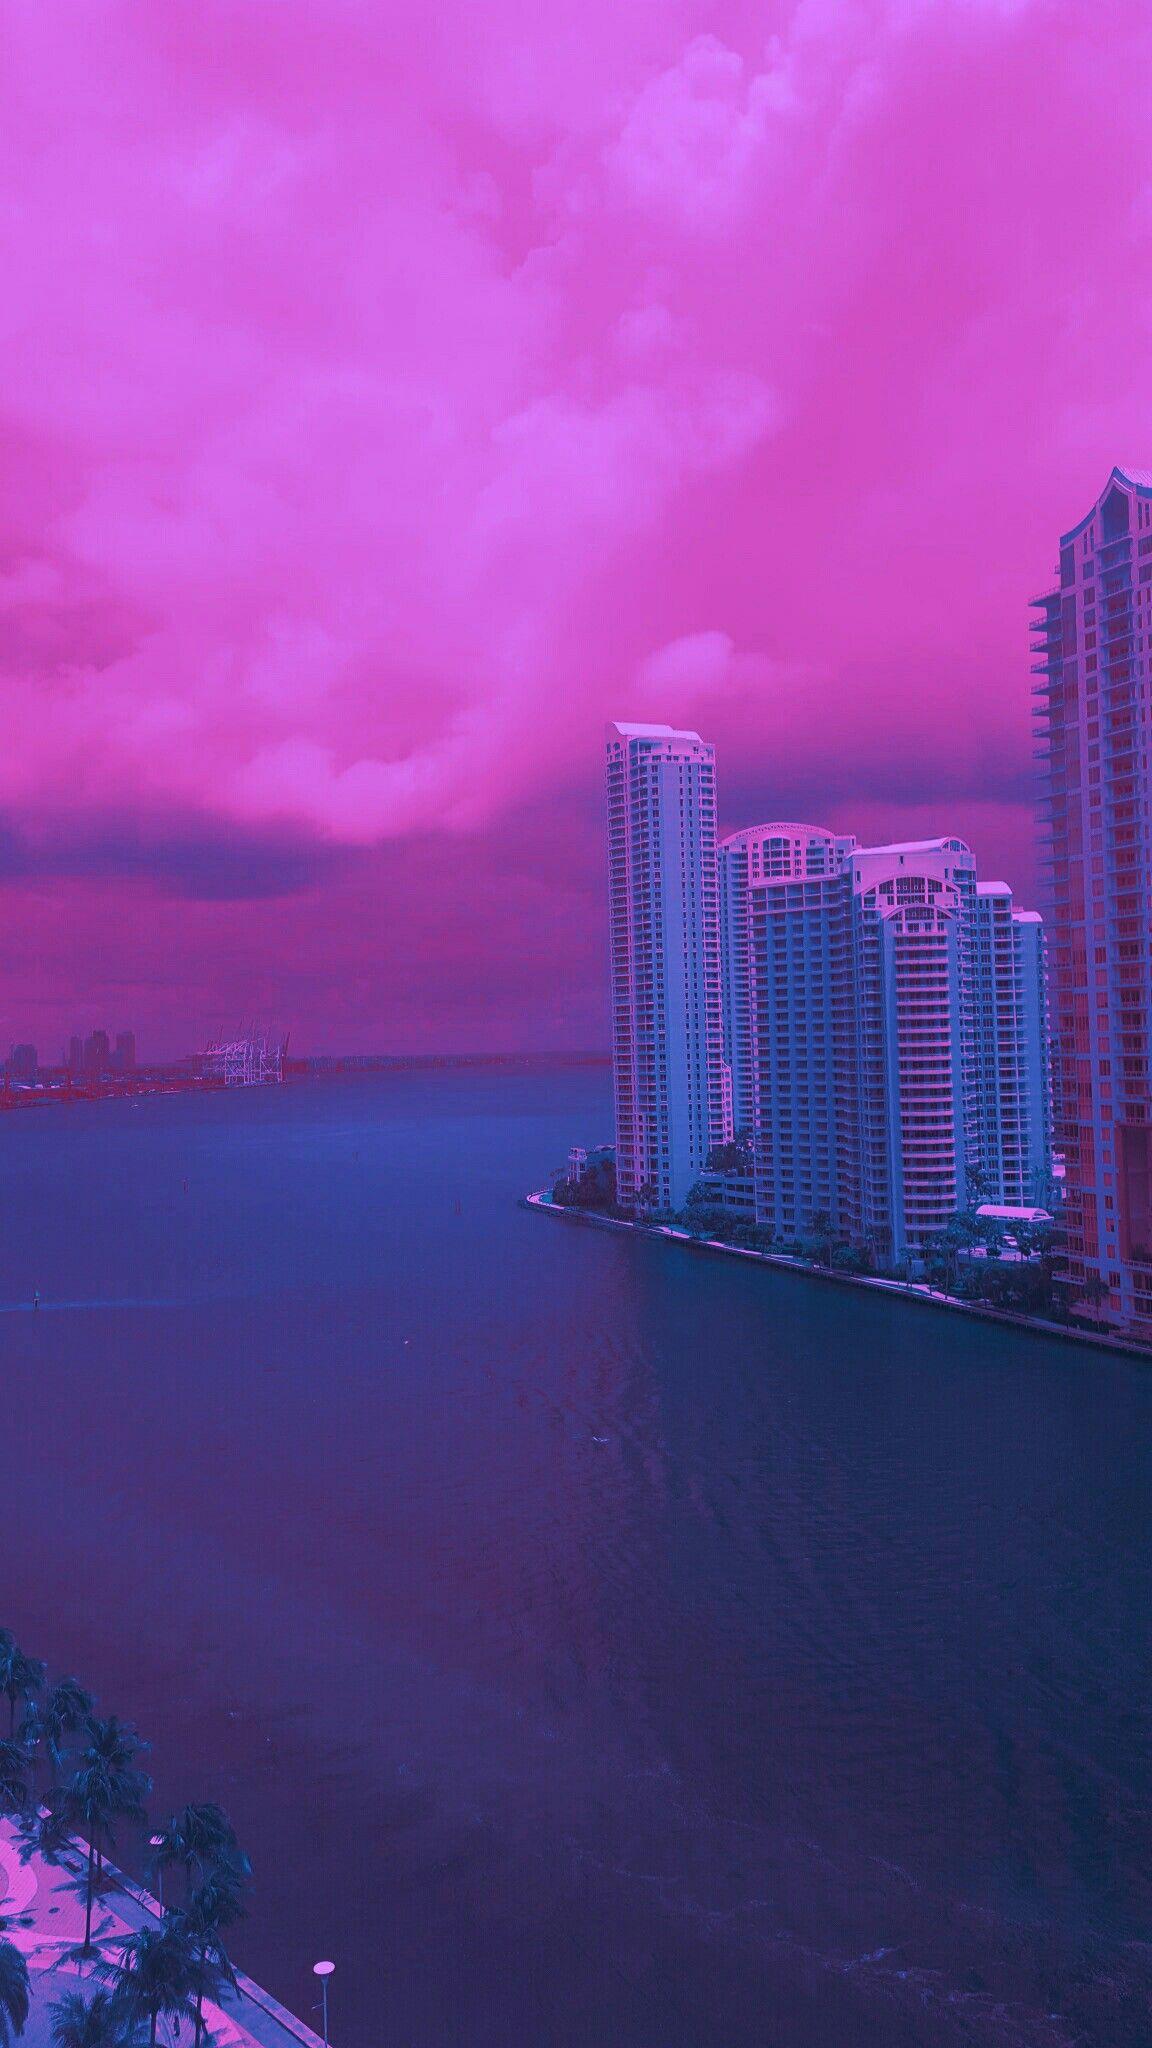 Miami Vice Aesthetic